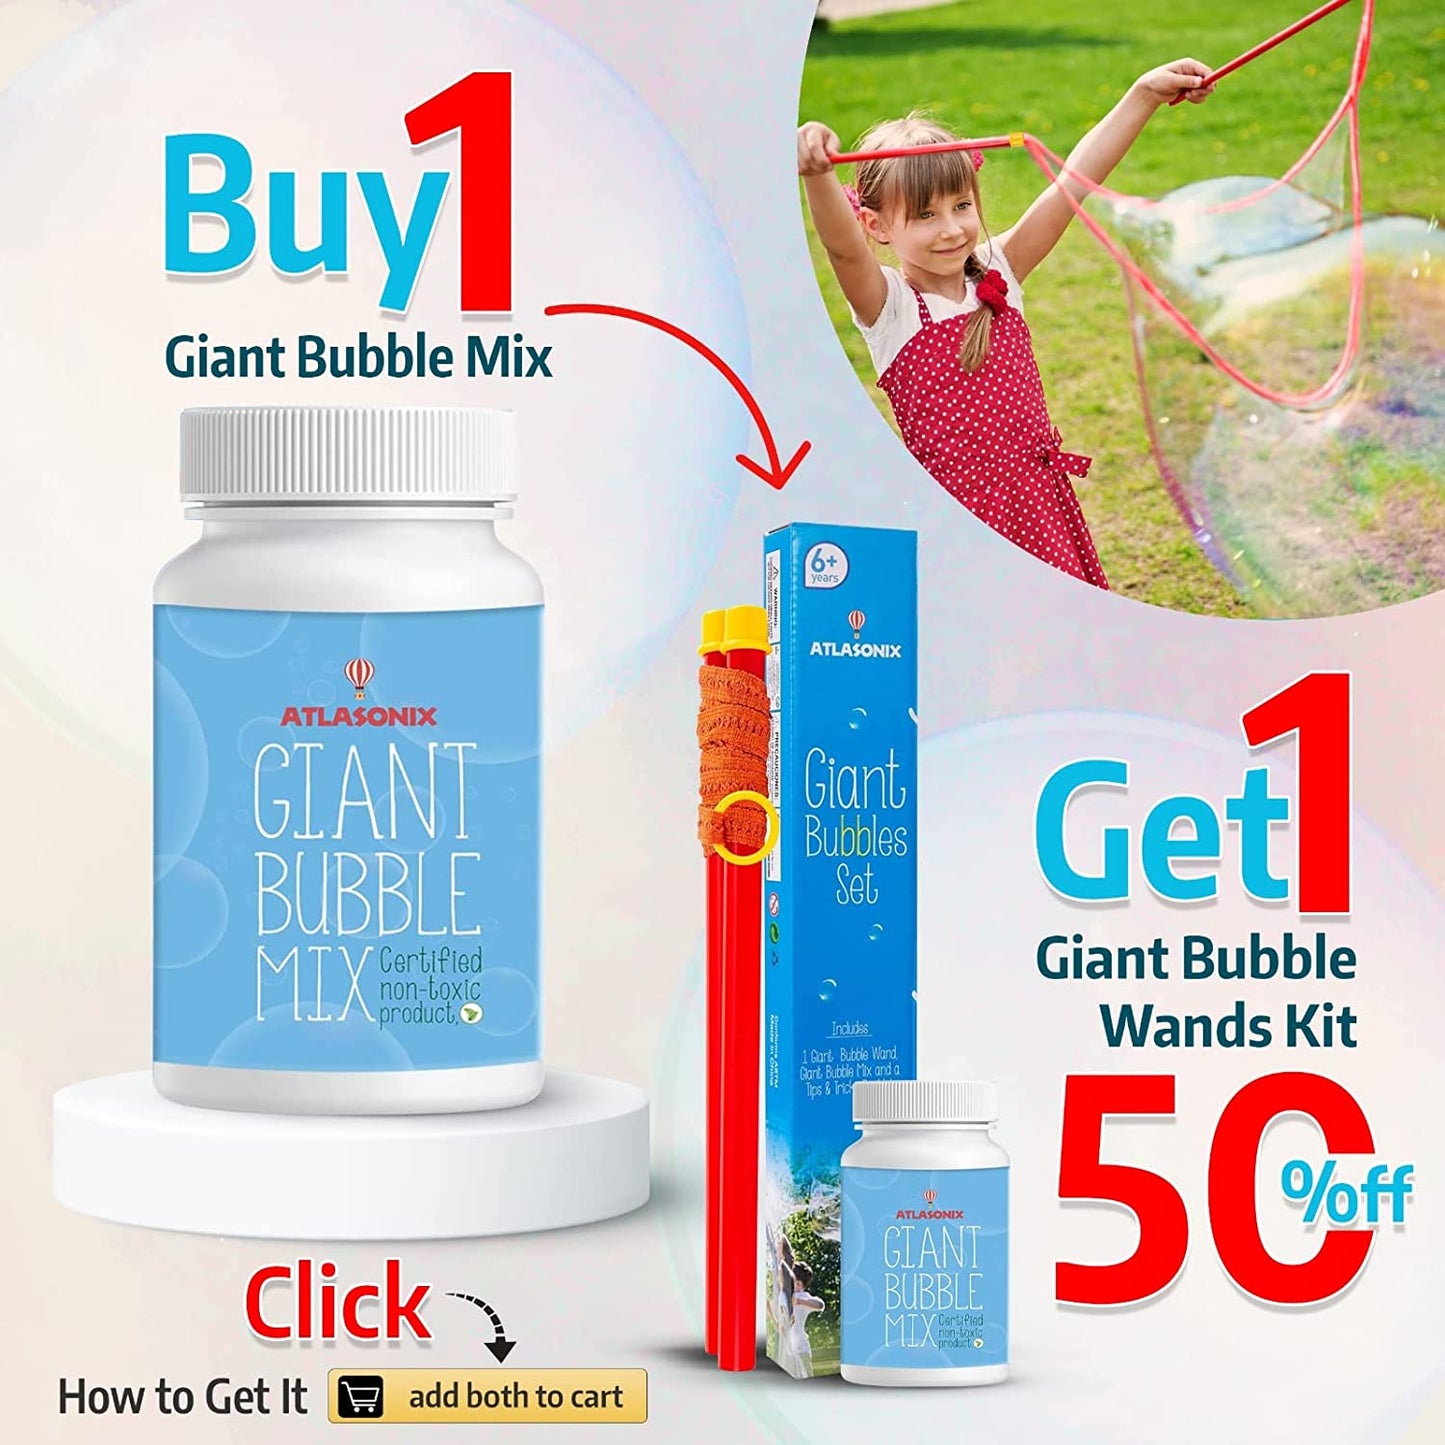 Giant Bubble Mix